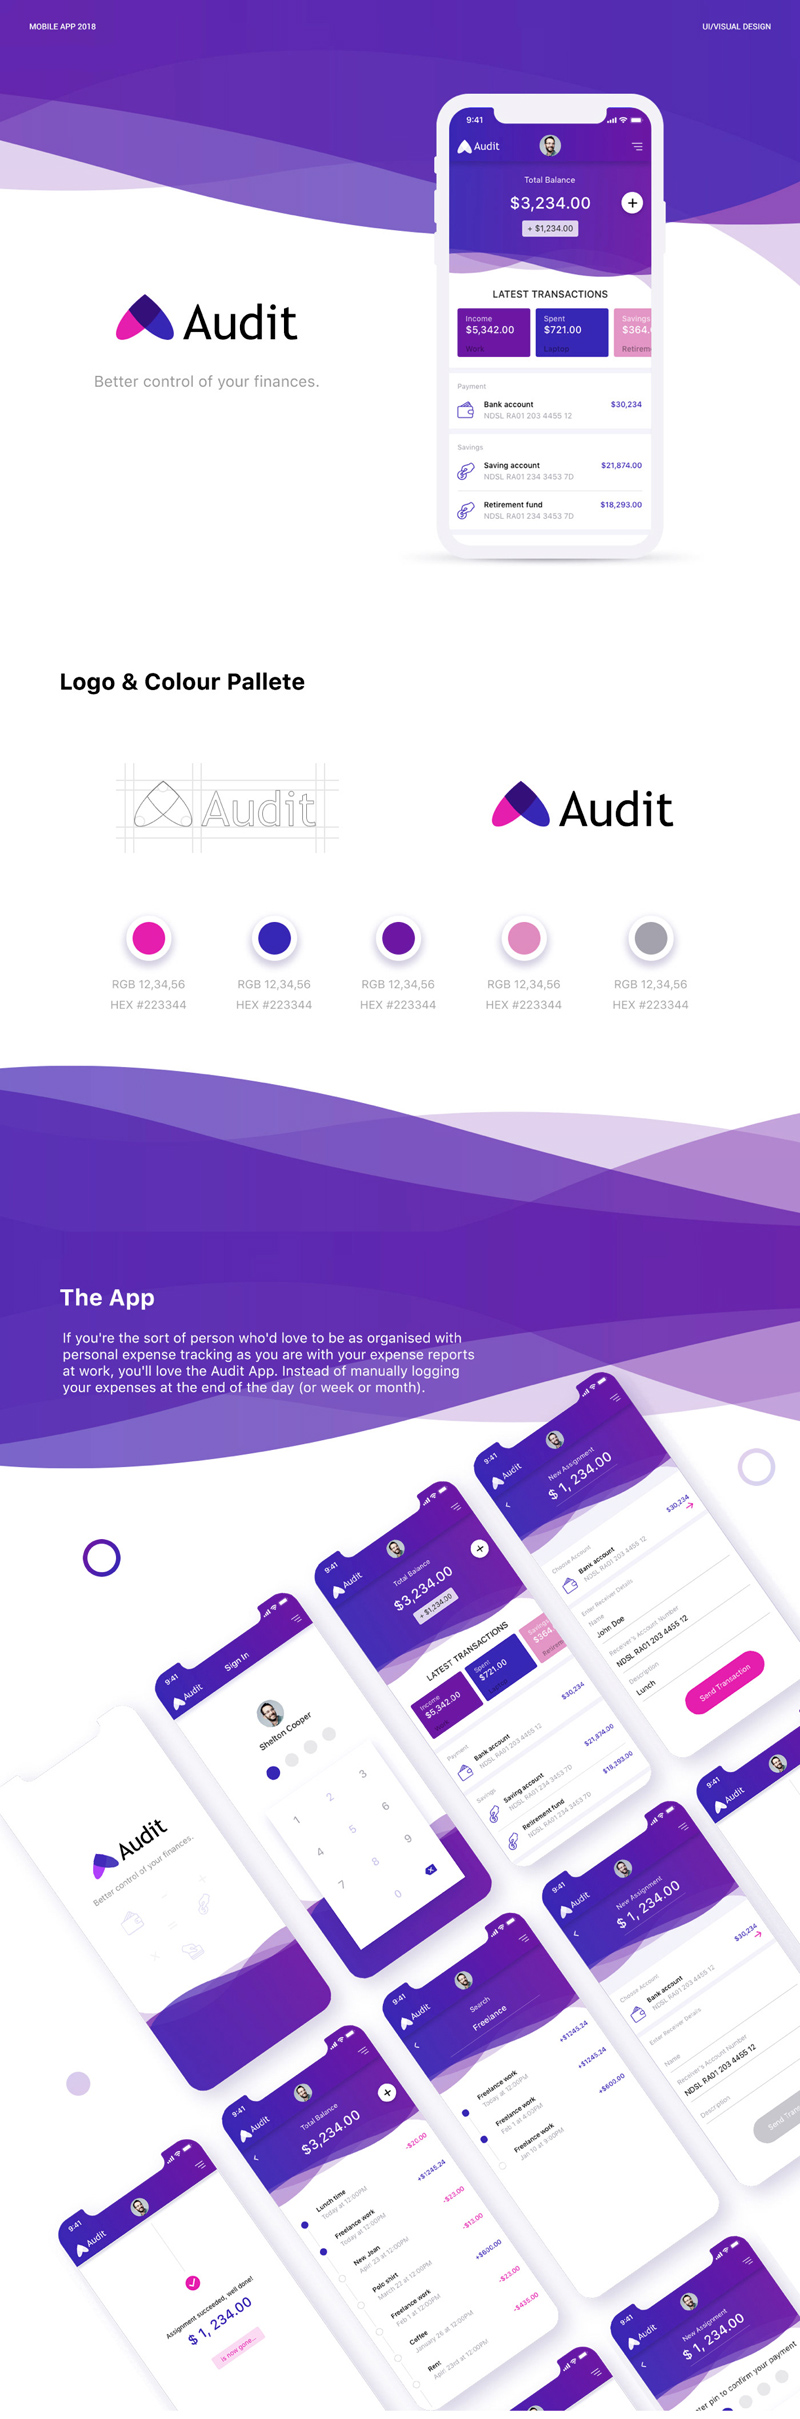 Аудит - набор пользовательского интерфейса Finance App для Adobe XD